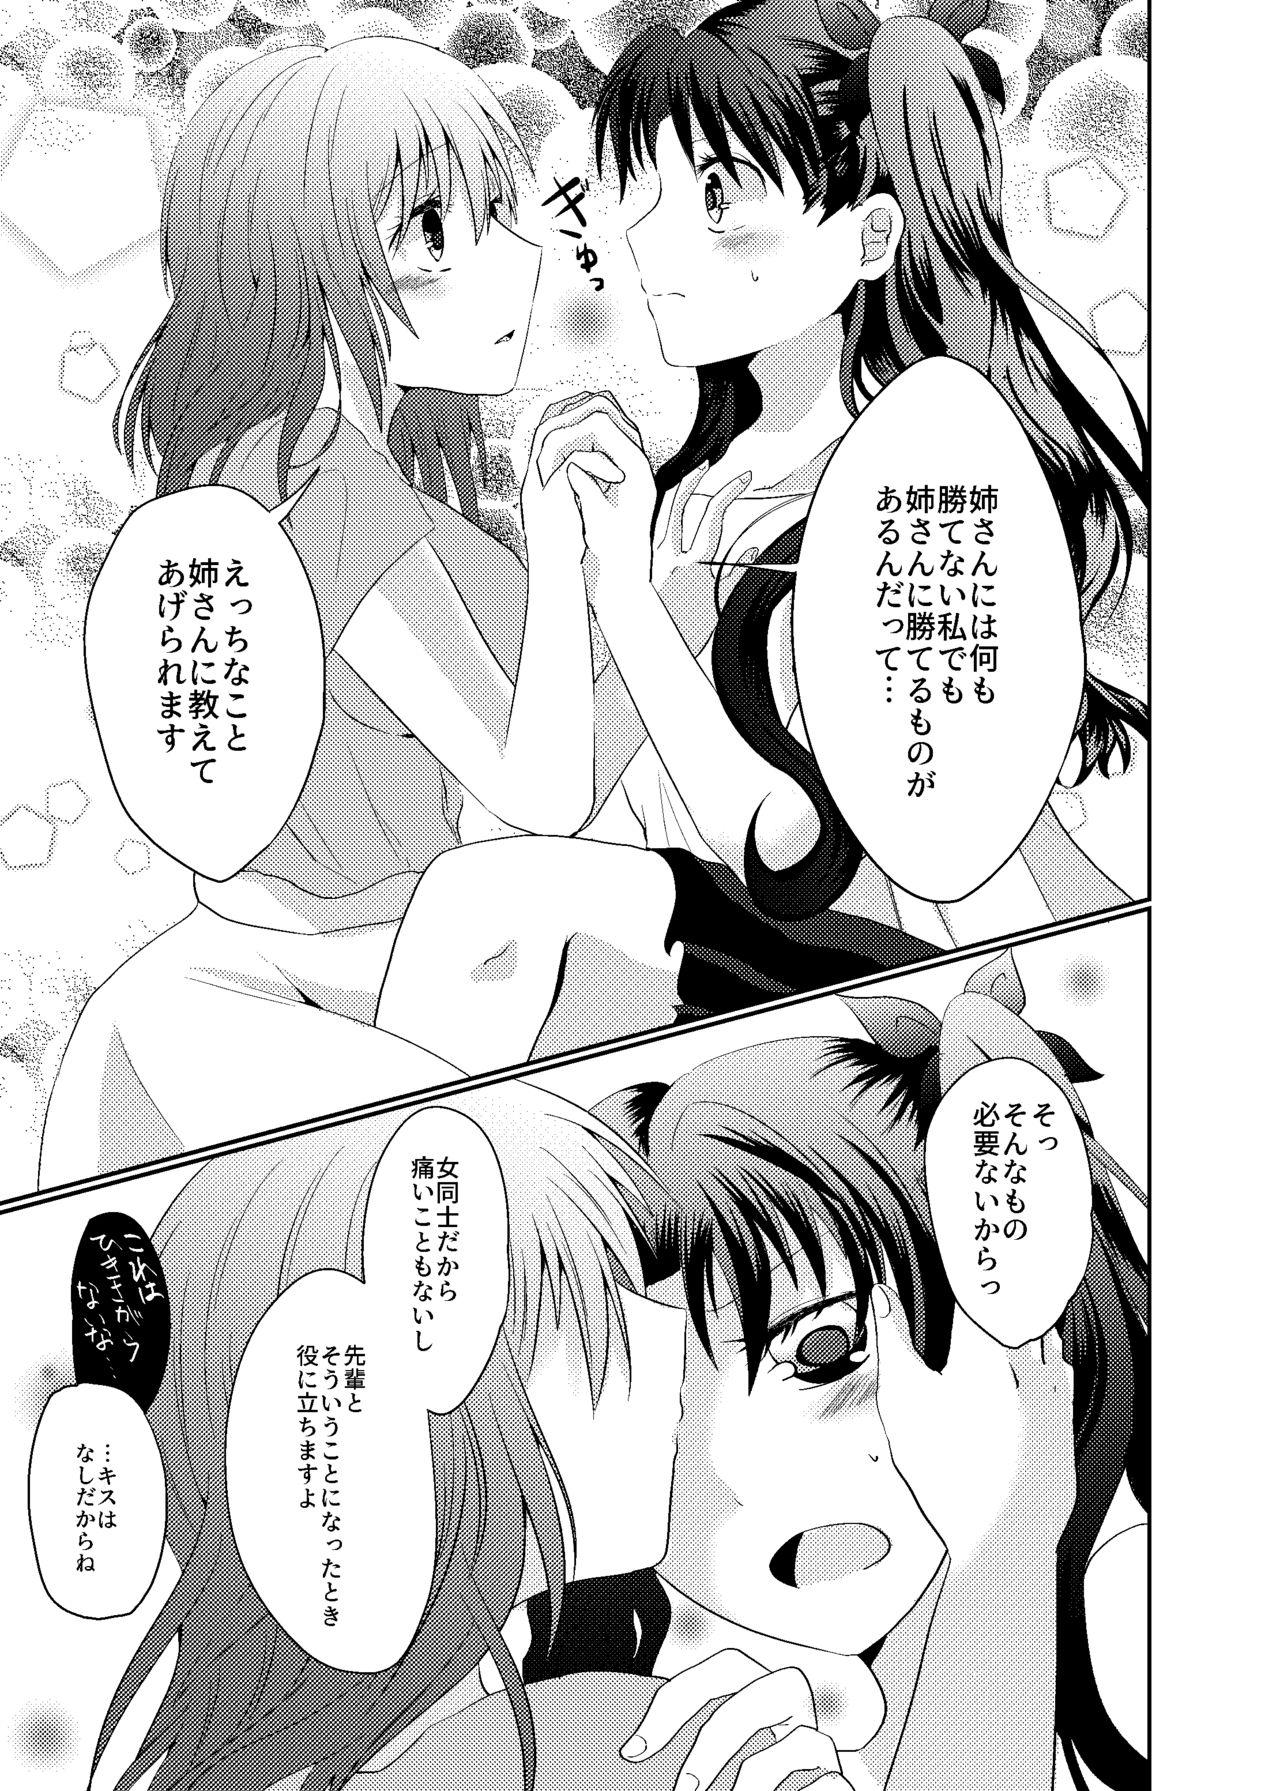 Sharing Tosaka Shimai no Atsui Natsu - Fate stay night Compilation - Page 7